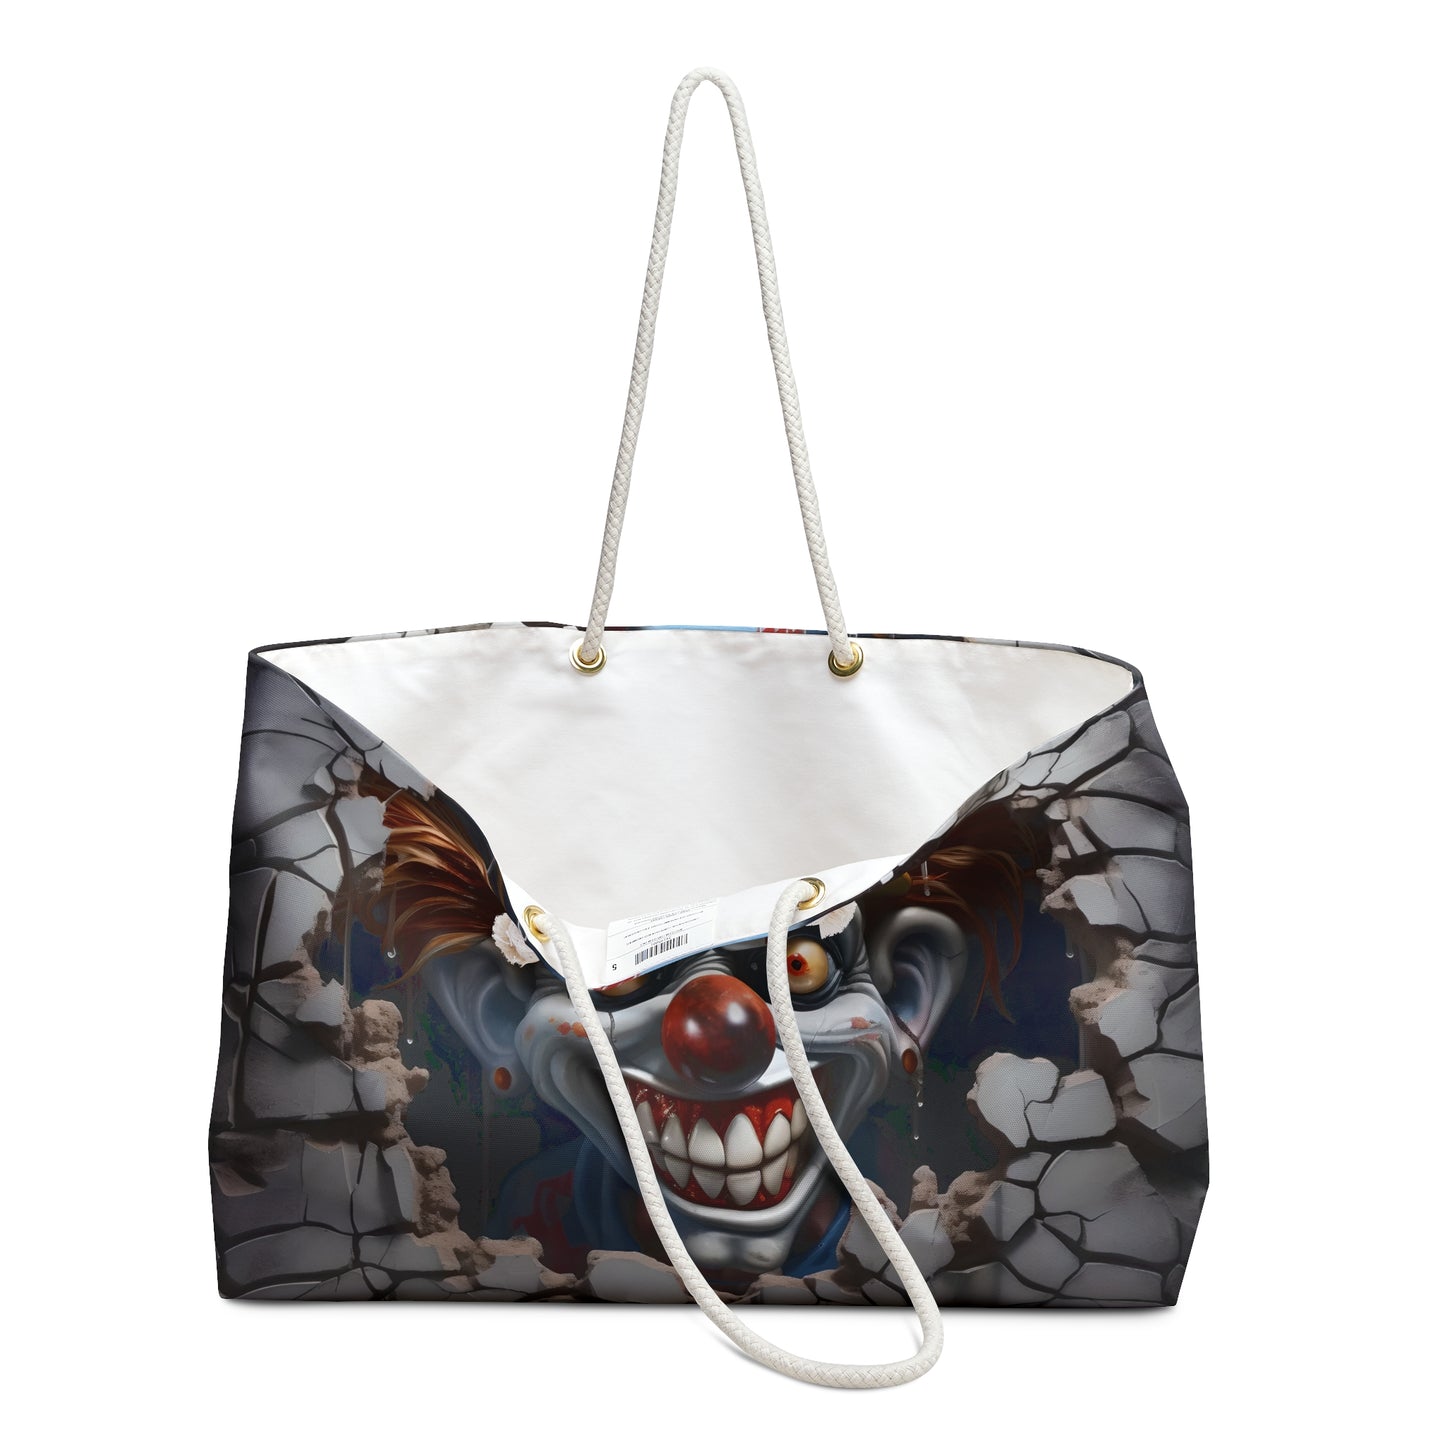 Scary Clown Weekender Bag